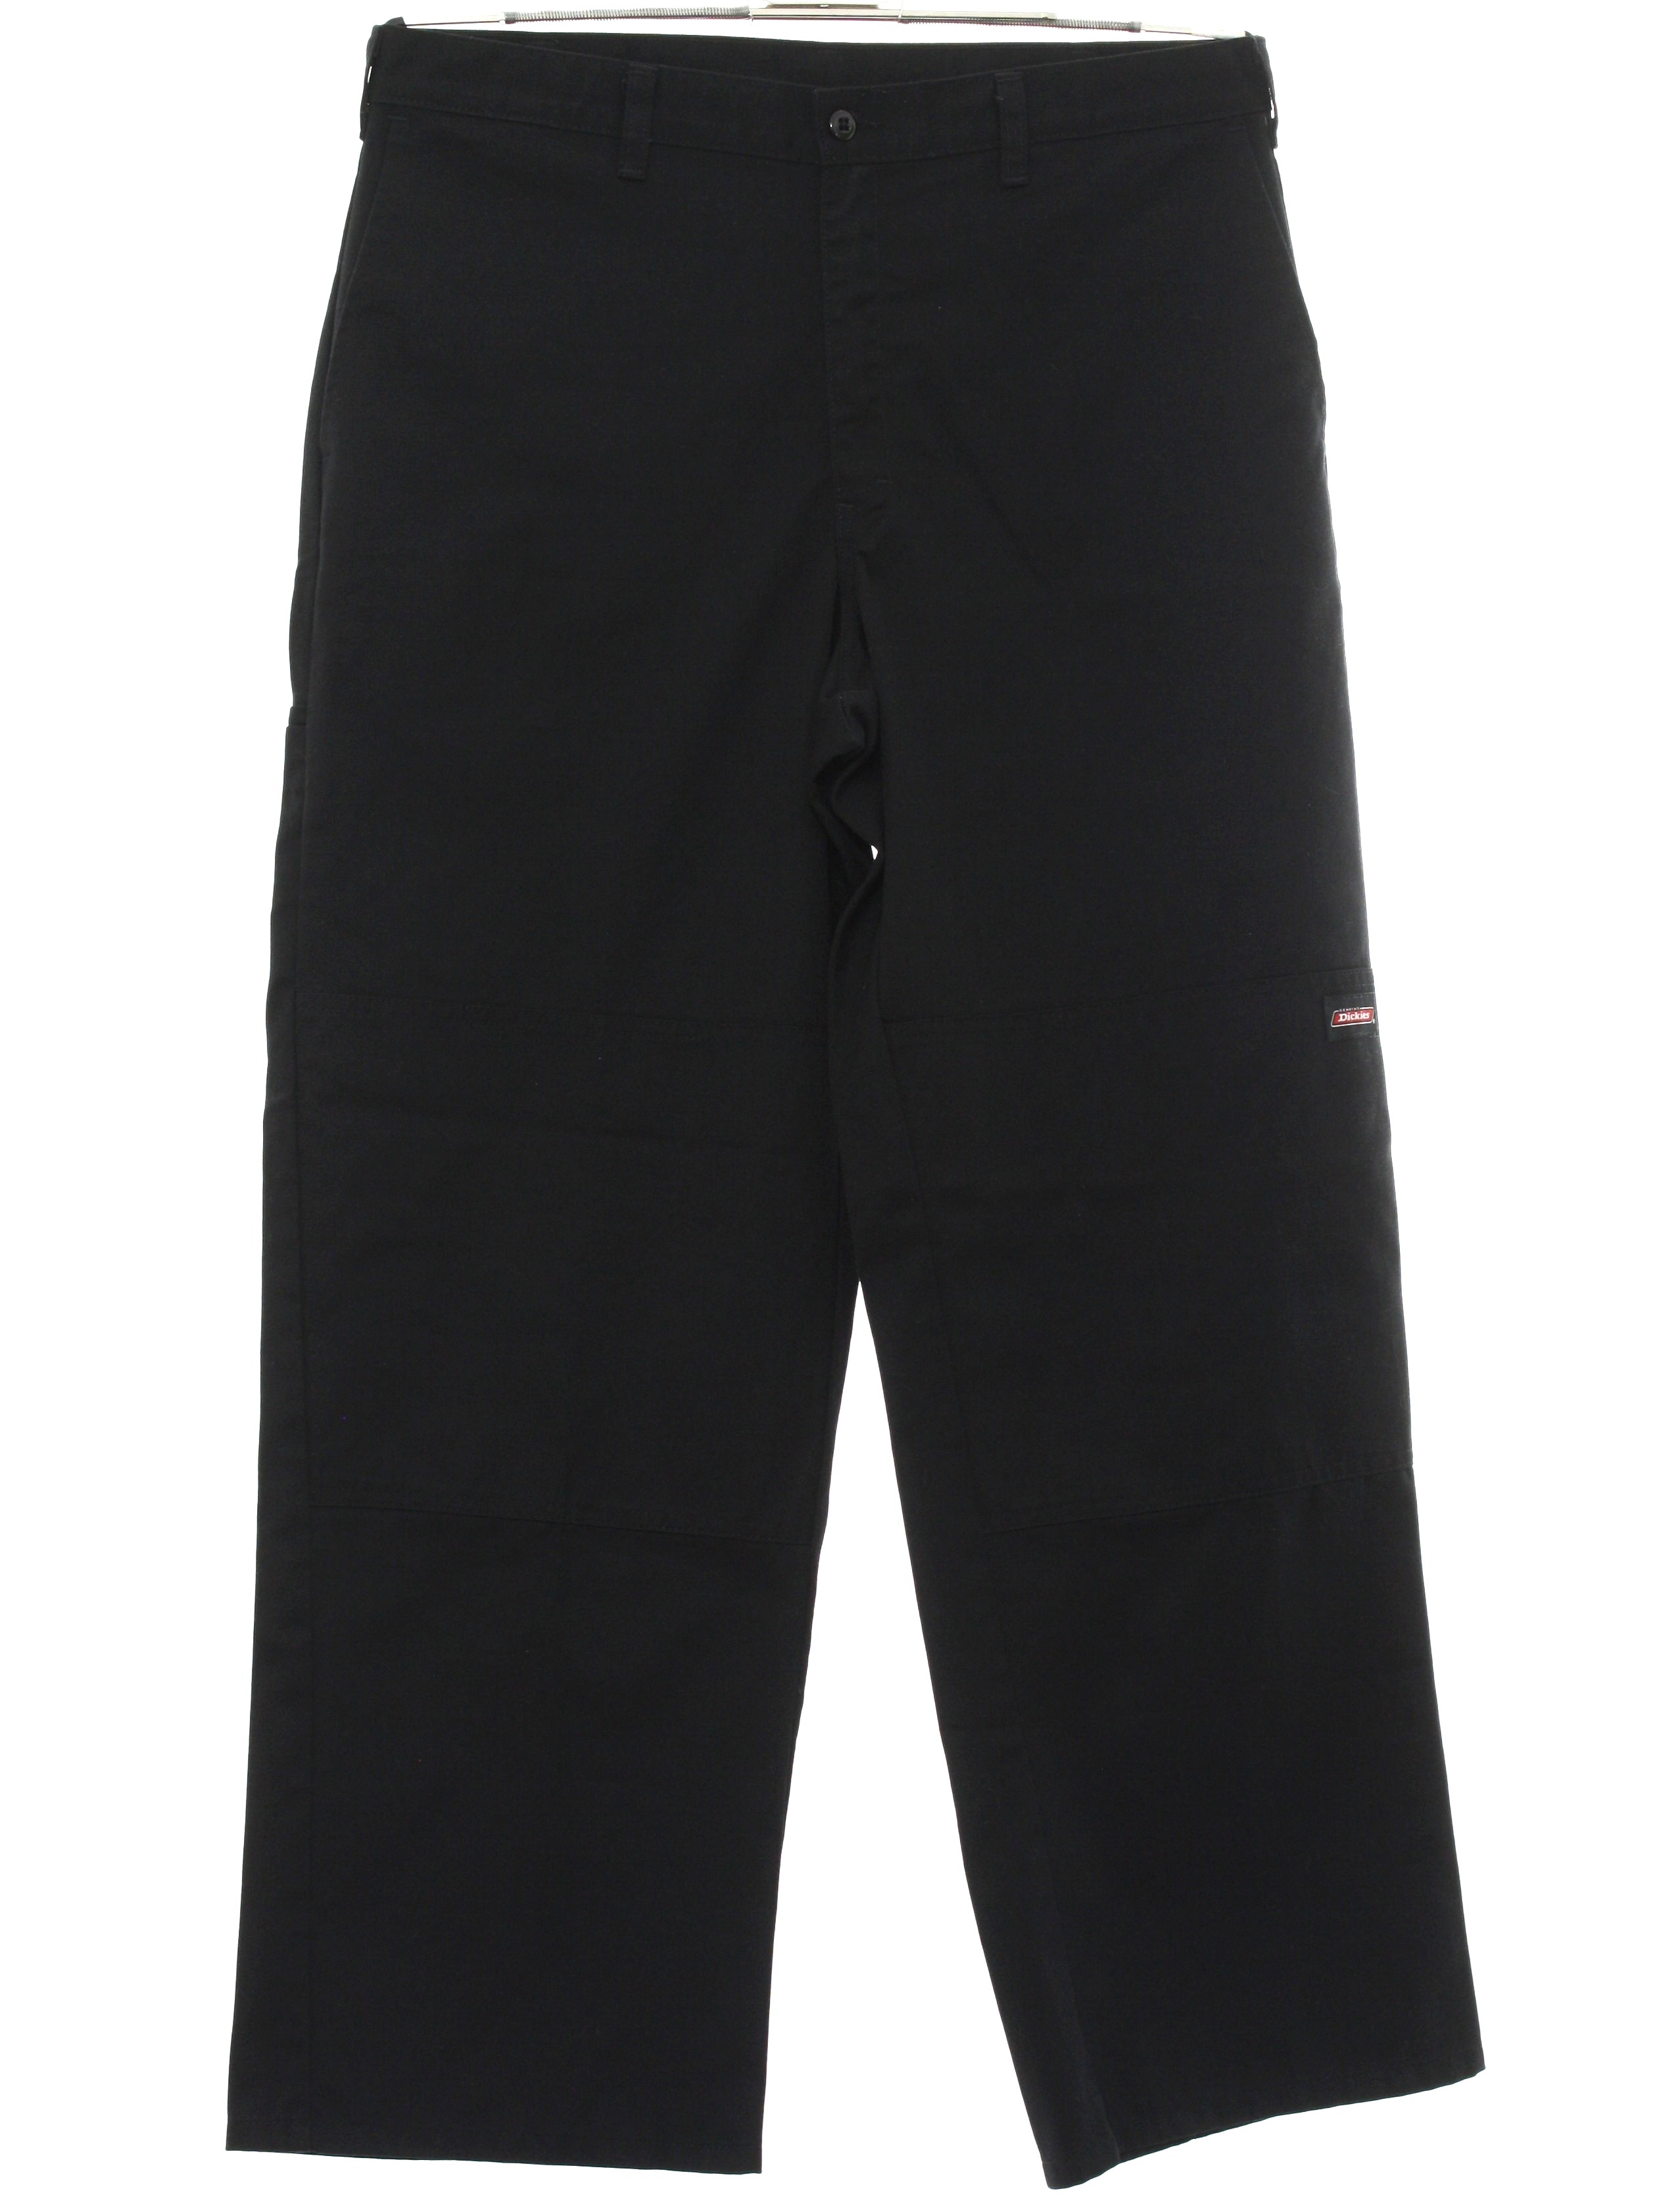 1990s Vintage Pants: Late 90s -Dickies- Mens black, slightly tapered ...